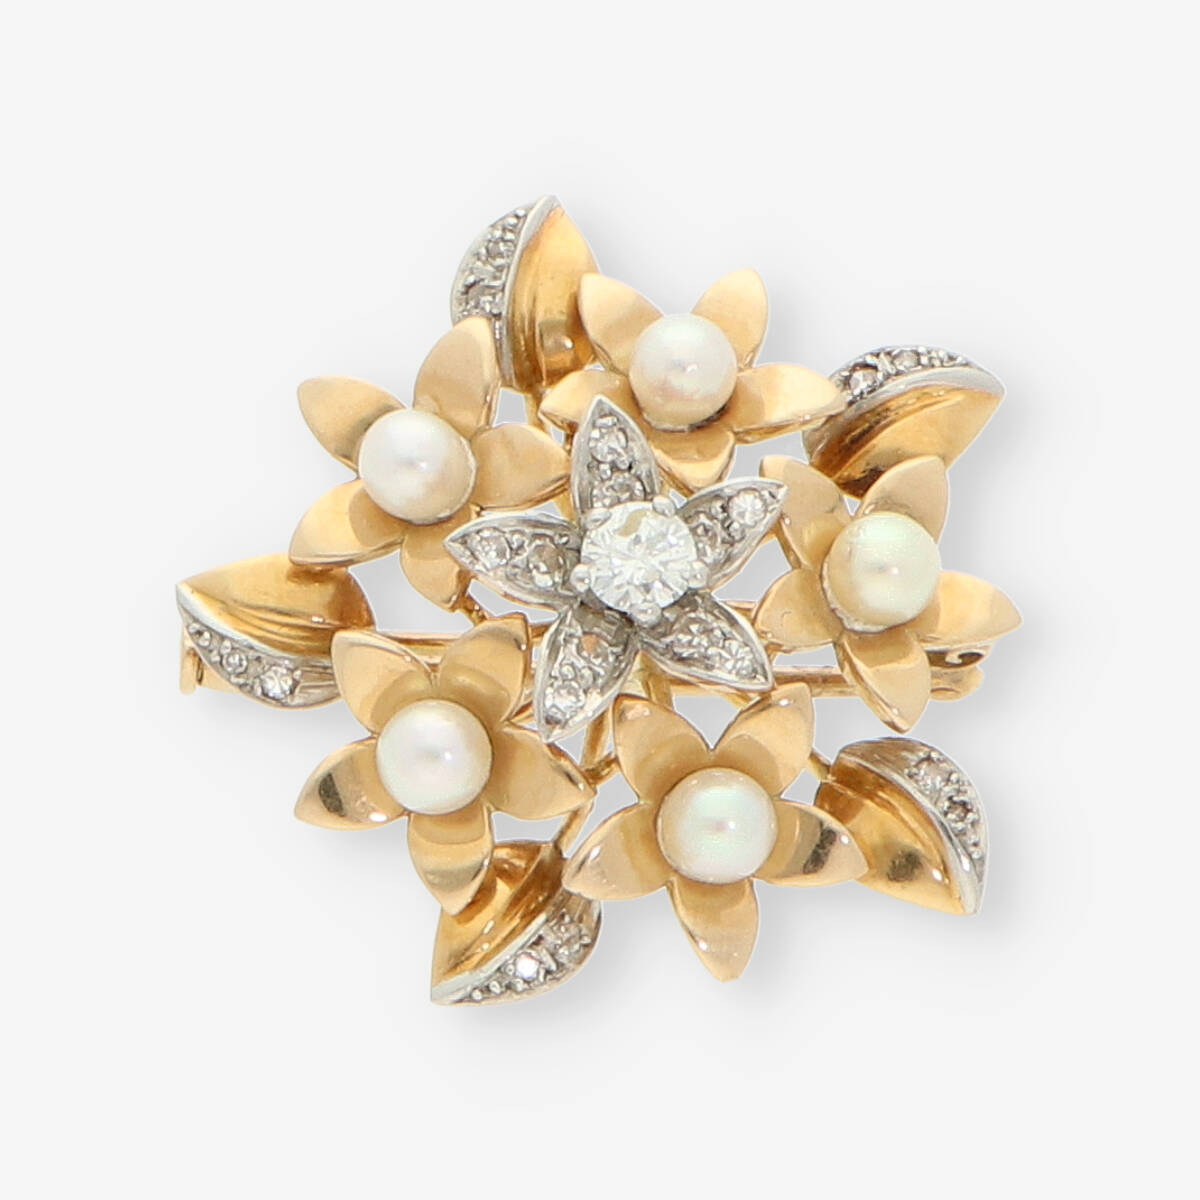 Domar Europa Esencialmente Broche de oro 18kt con diamantes y perlas | Comprar broches de segunda mano